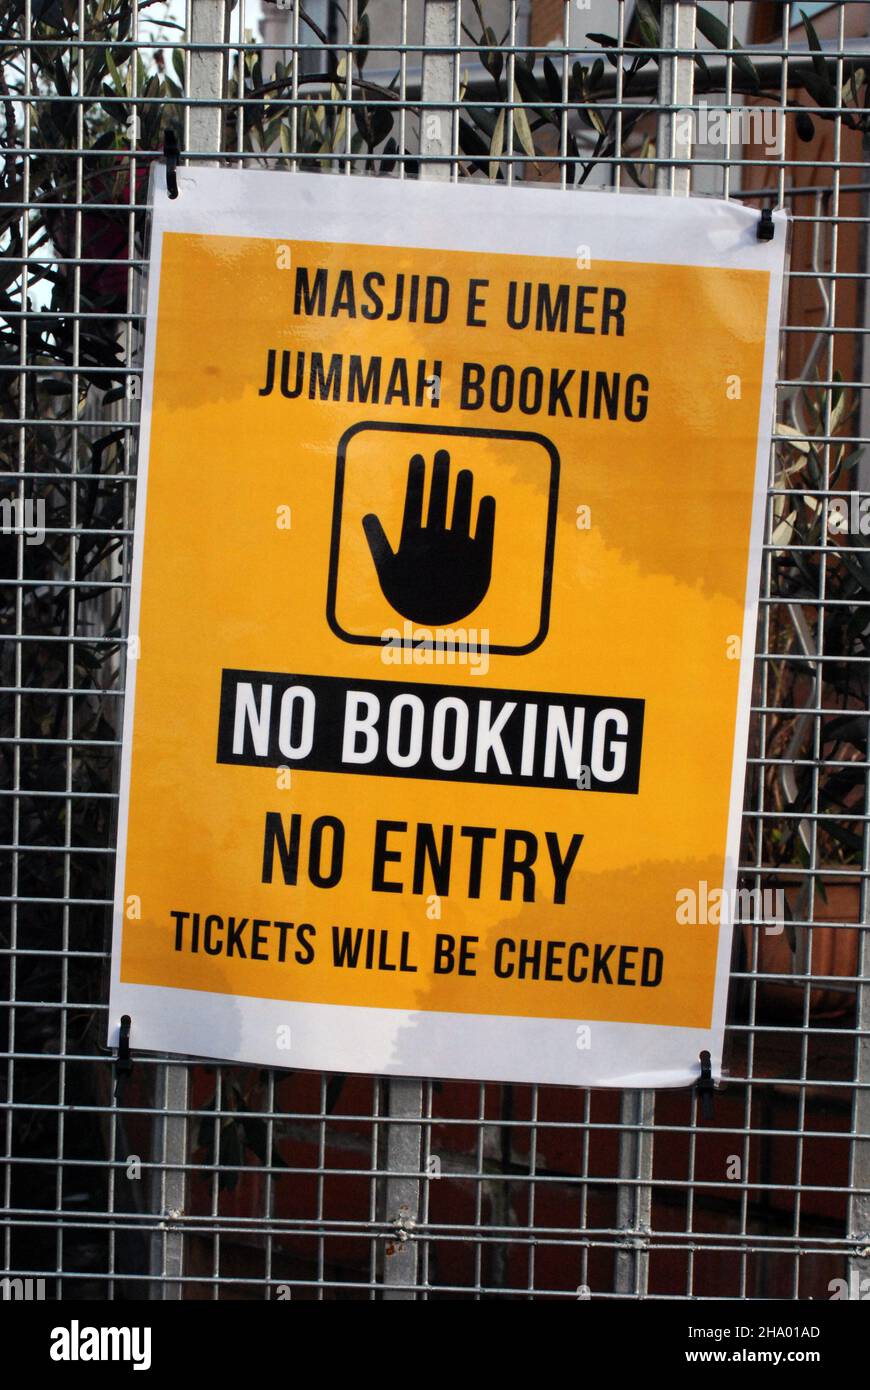 Signez la publicité de la nécessité de pré-réservation, en raison des restrictions Covid à un East London masjid e umer (une école de madrasah) et jummah (prières du vendredi). Banque D'Images